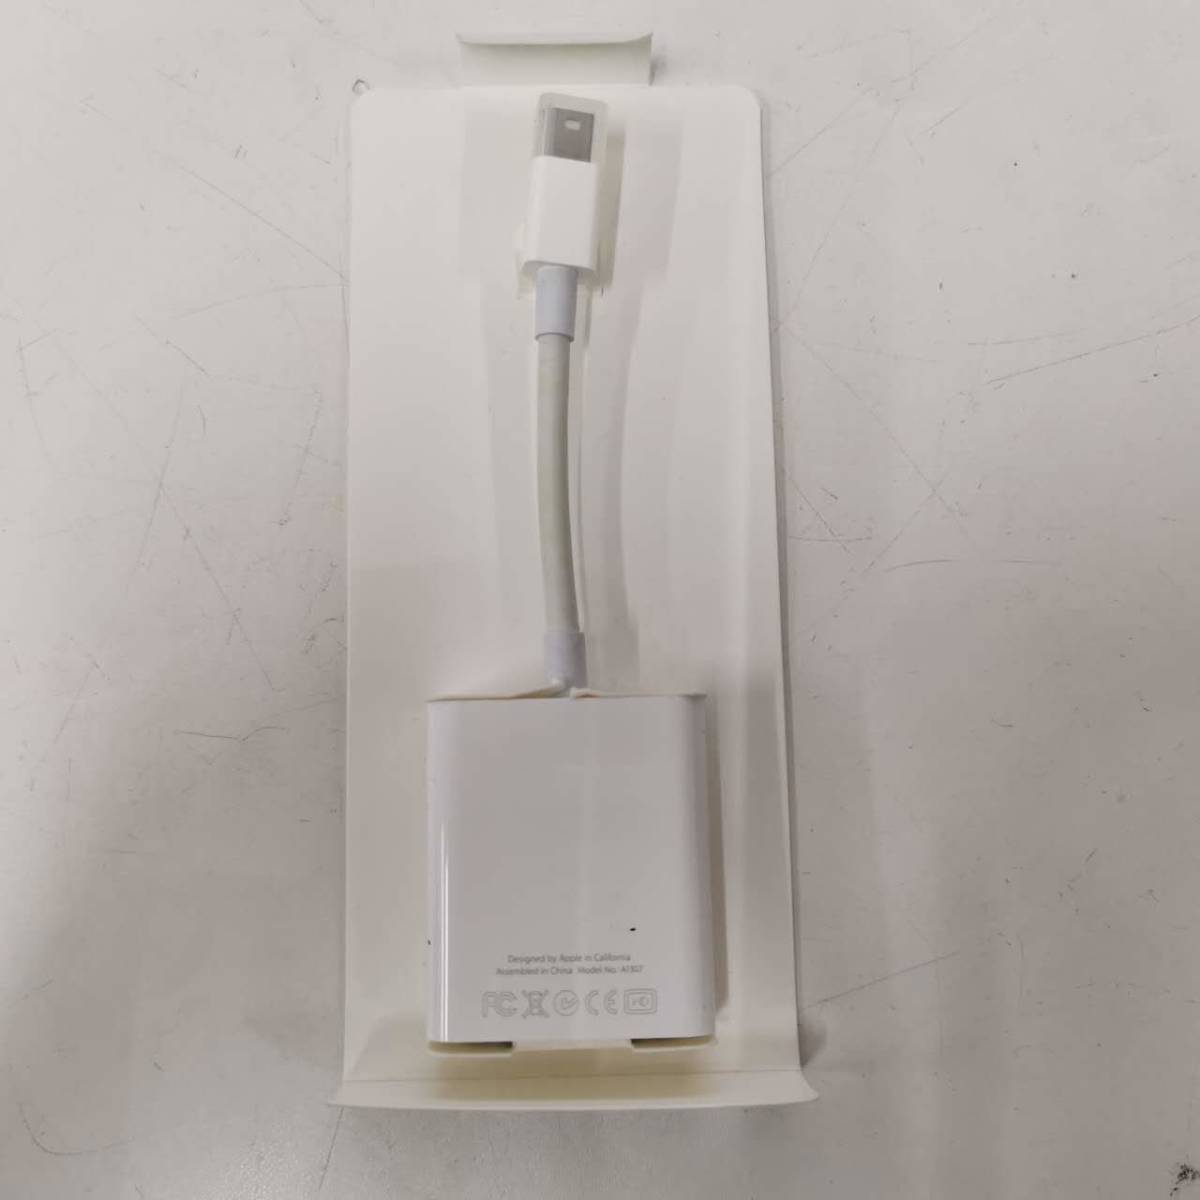 (115個セット) Apple A1307 Mini DisplayPort - VGA変換アダプタ 長期在庫未使用品_画像2